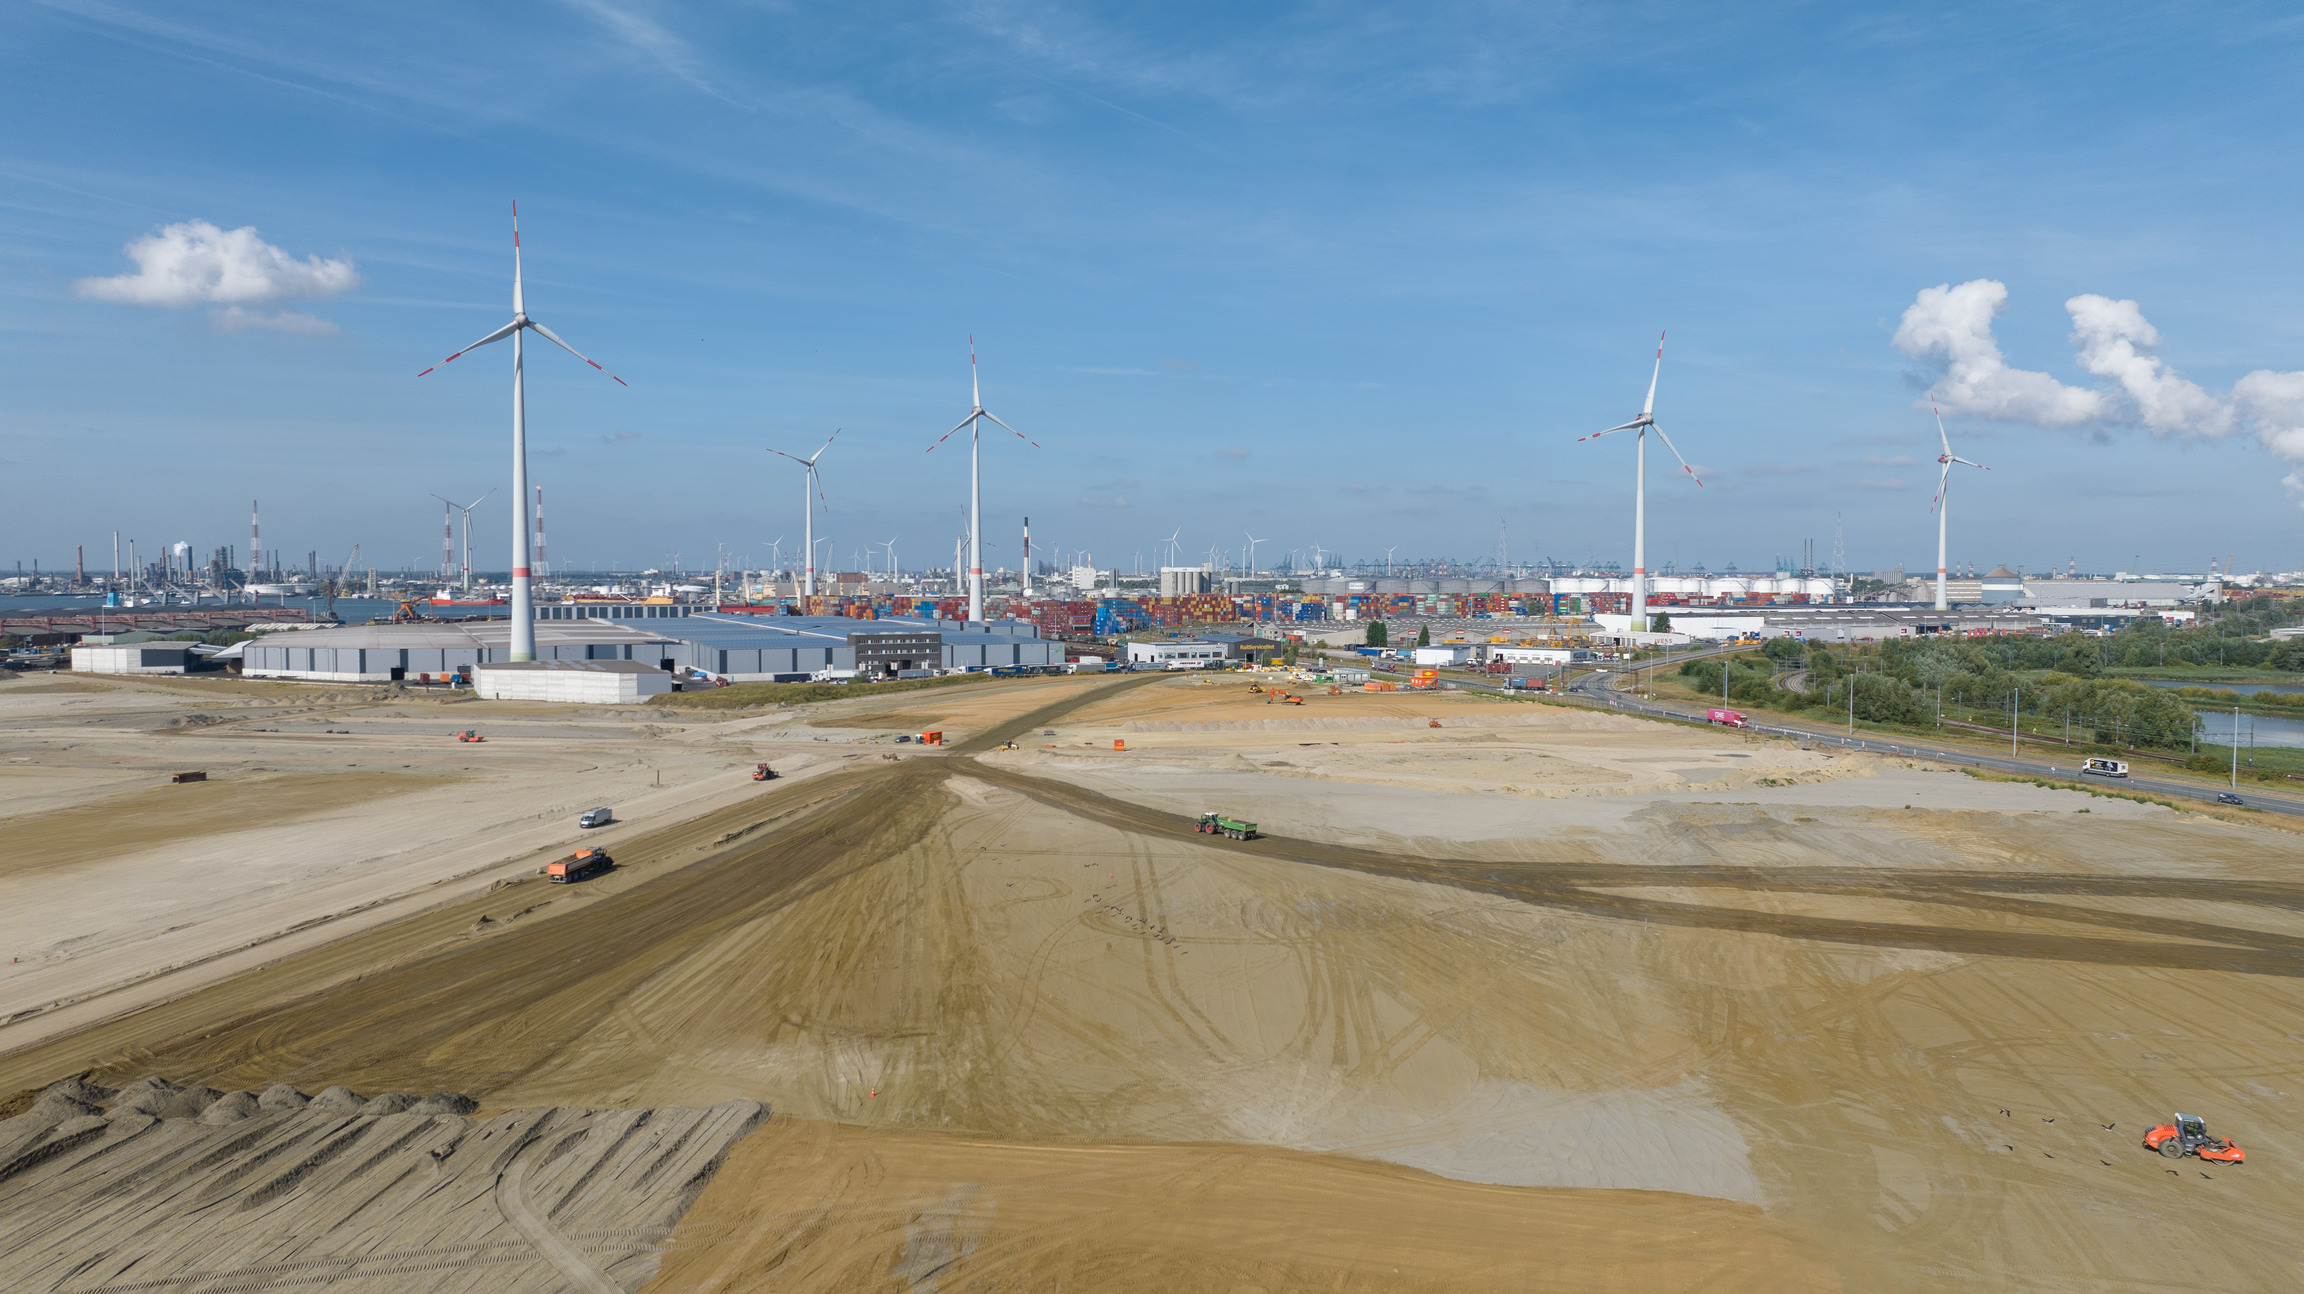 PureCycle en Port of Antwerp-Bruges kondigen NextGen District aan als locatie voor eerste plastic recyclingfabriek van PureCycle in Europa